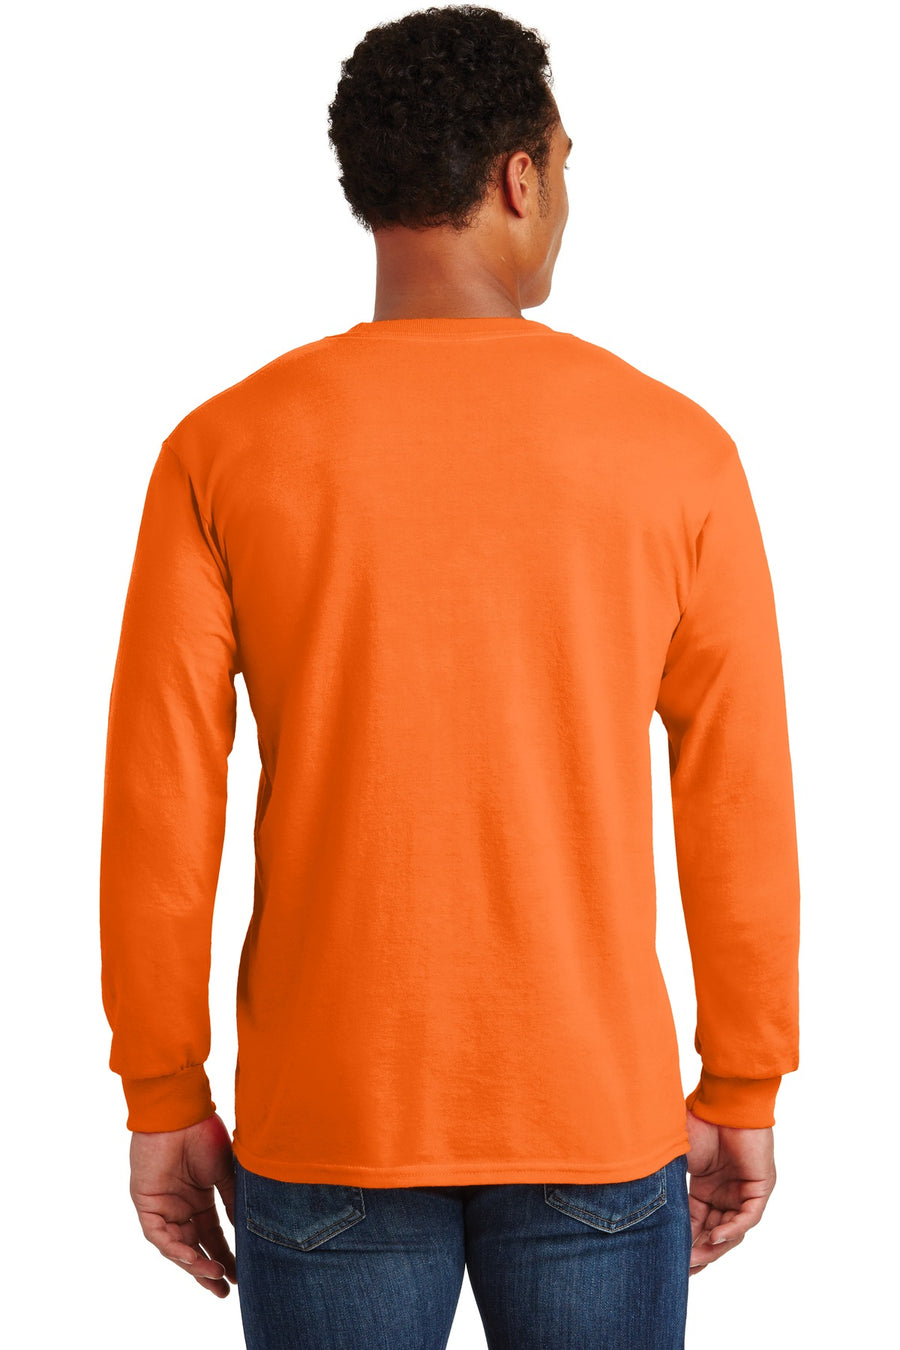 2410-S. Orange-back_model